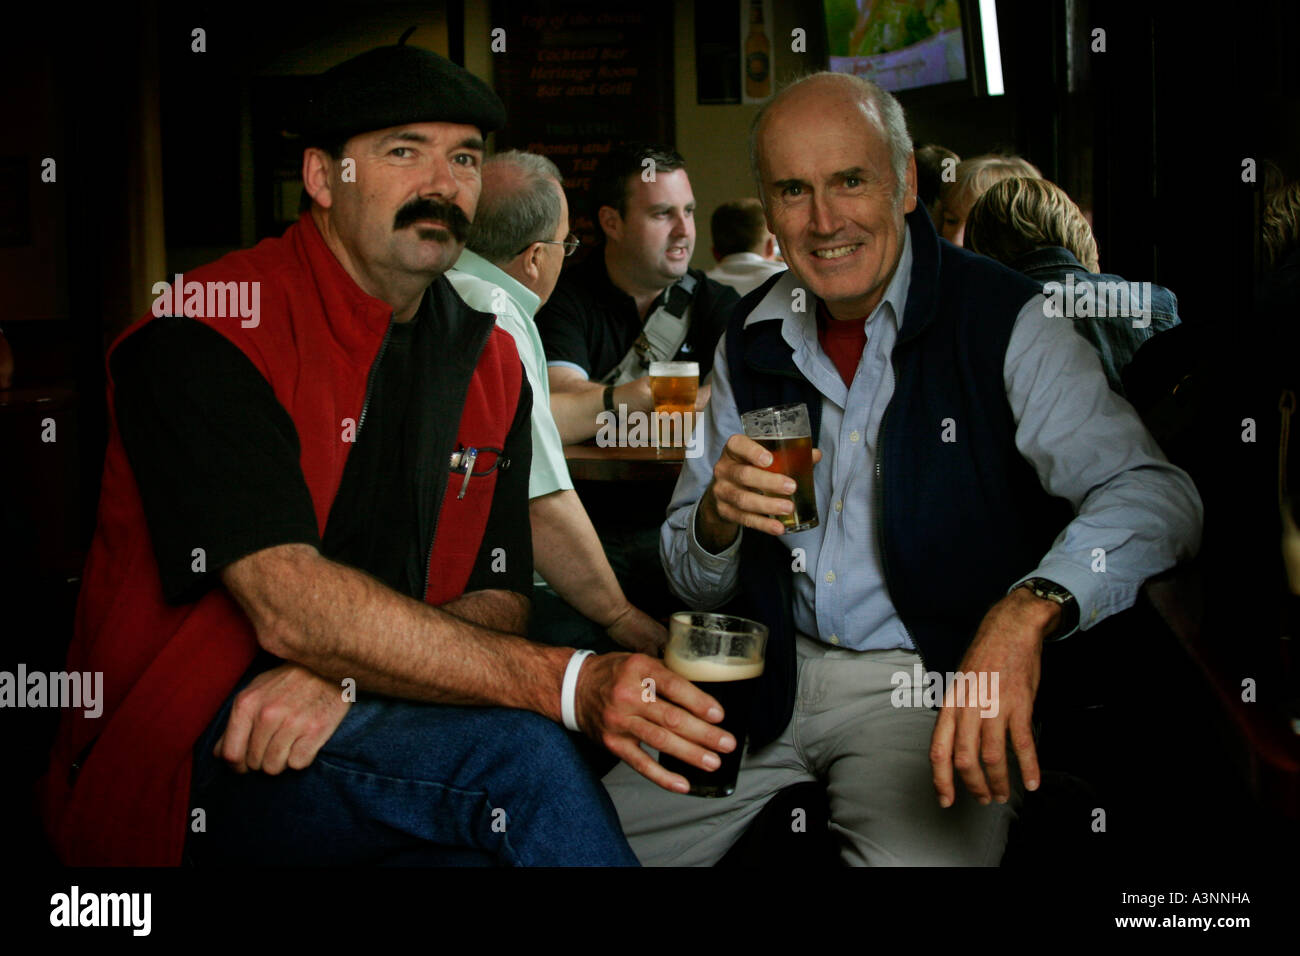 Men having a drink in a pub in the Rocks in Sydney Australia Stock Photo